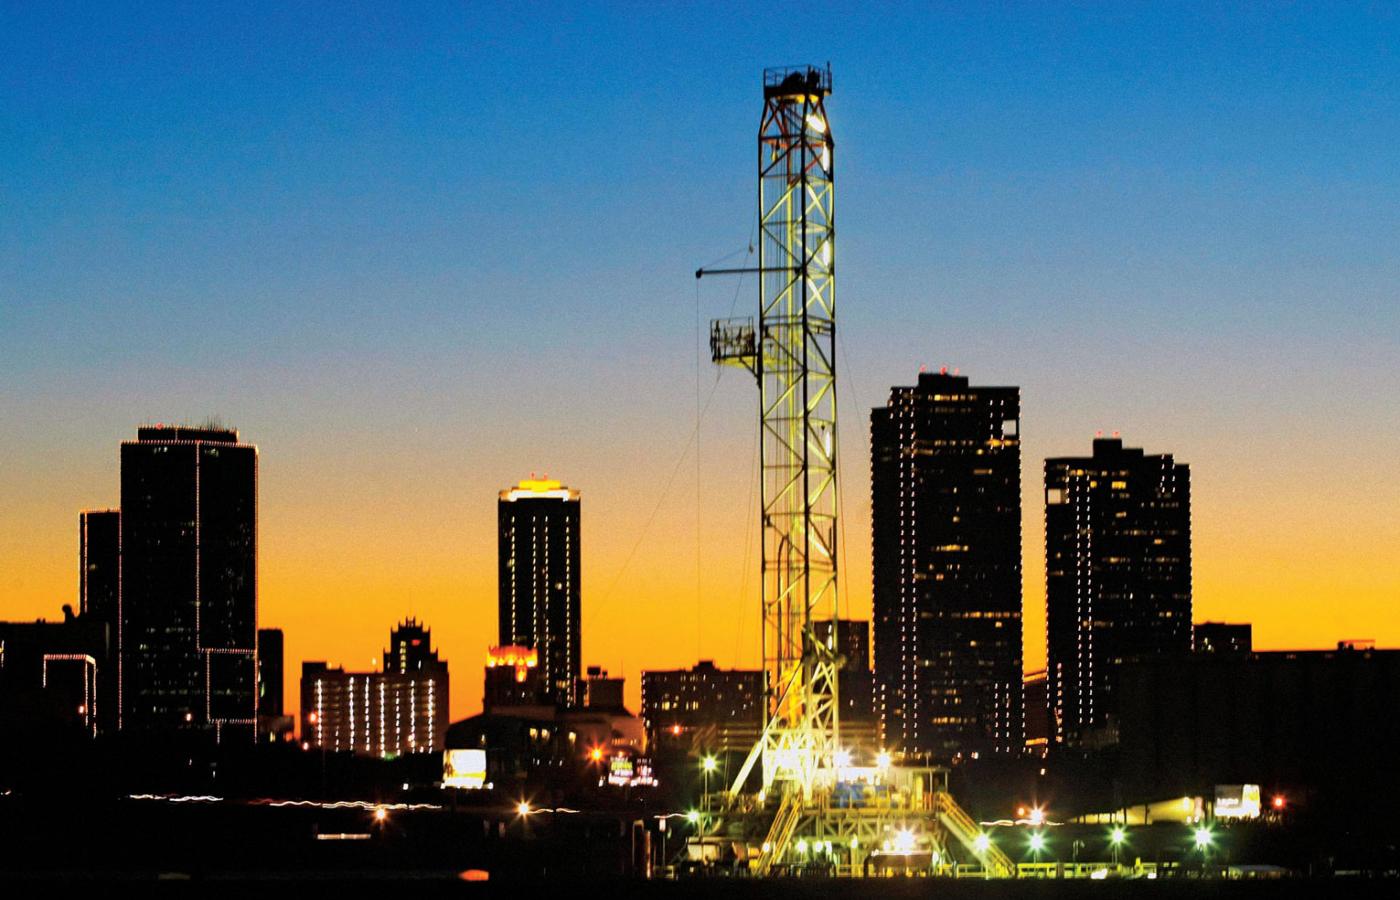 Wieża wiertnicza do pozyskiwania gazu łupkowego, Fort Worth w Teksasie.